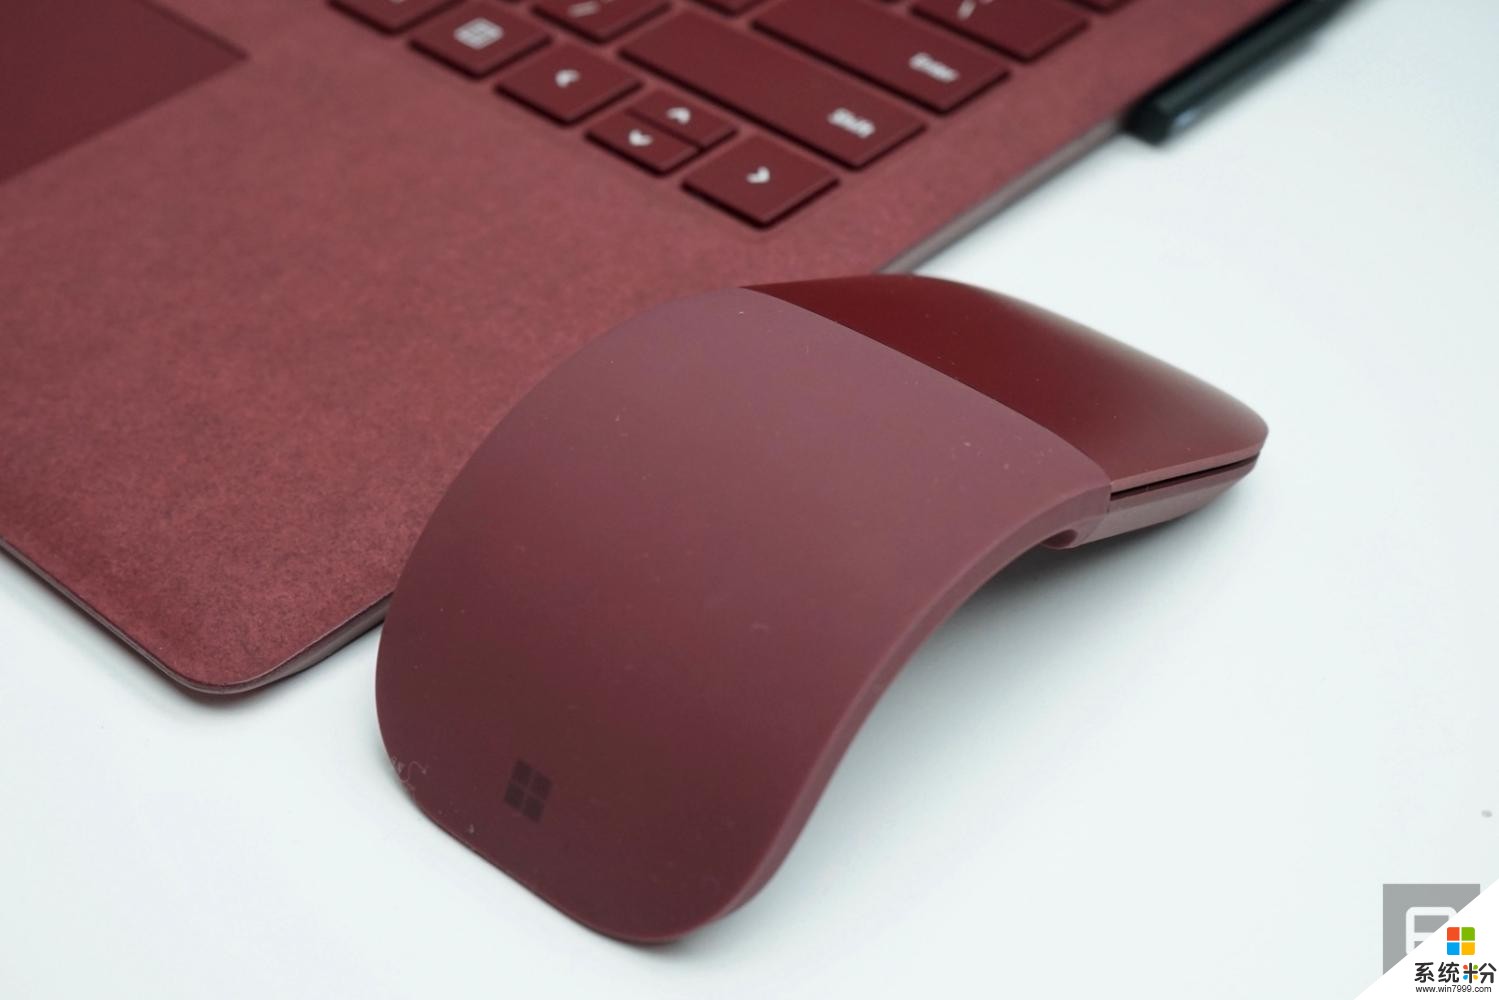 微软又推出新款的可摊平式无线蓝牙鼠标 Surface Arc(1)